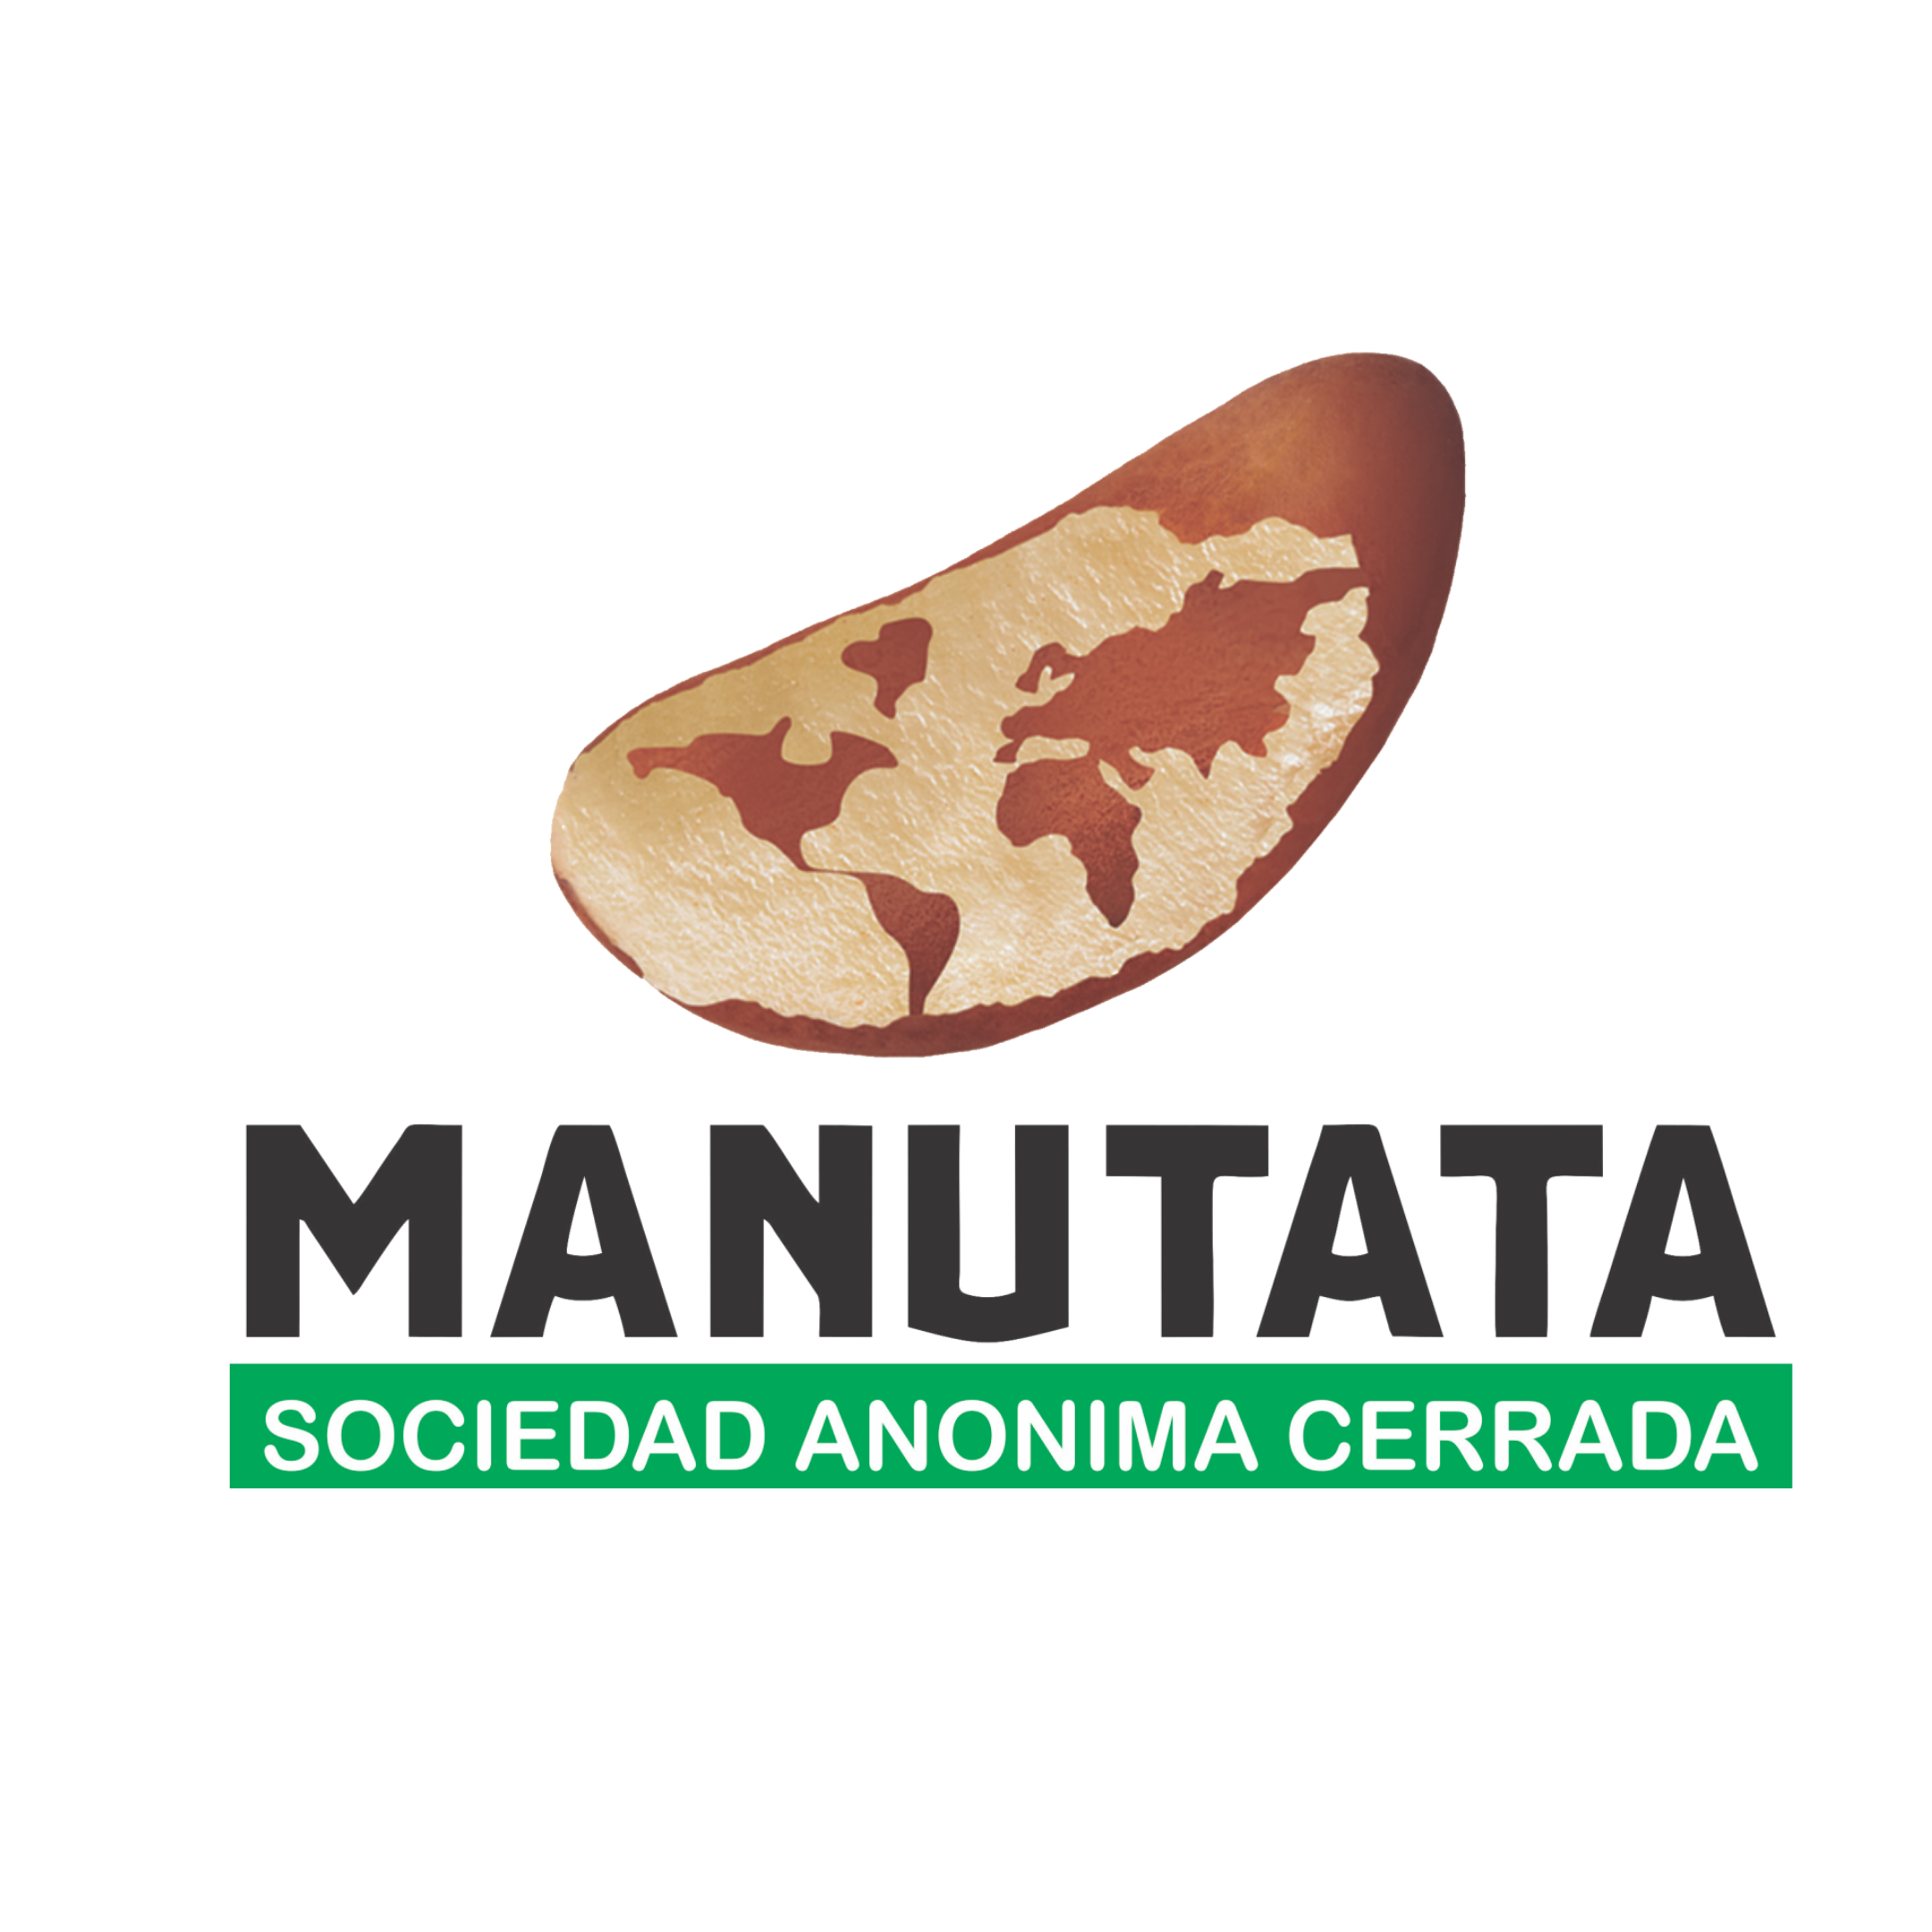 MANUTATA SOCIEDAD ANONIMA CERRADA